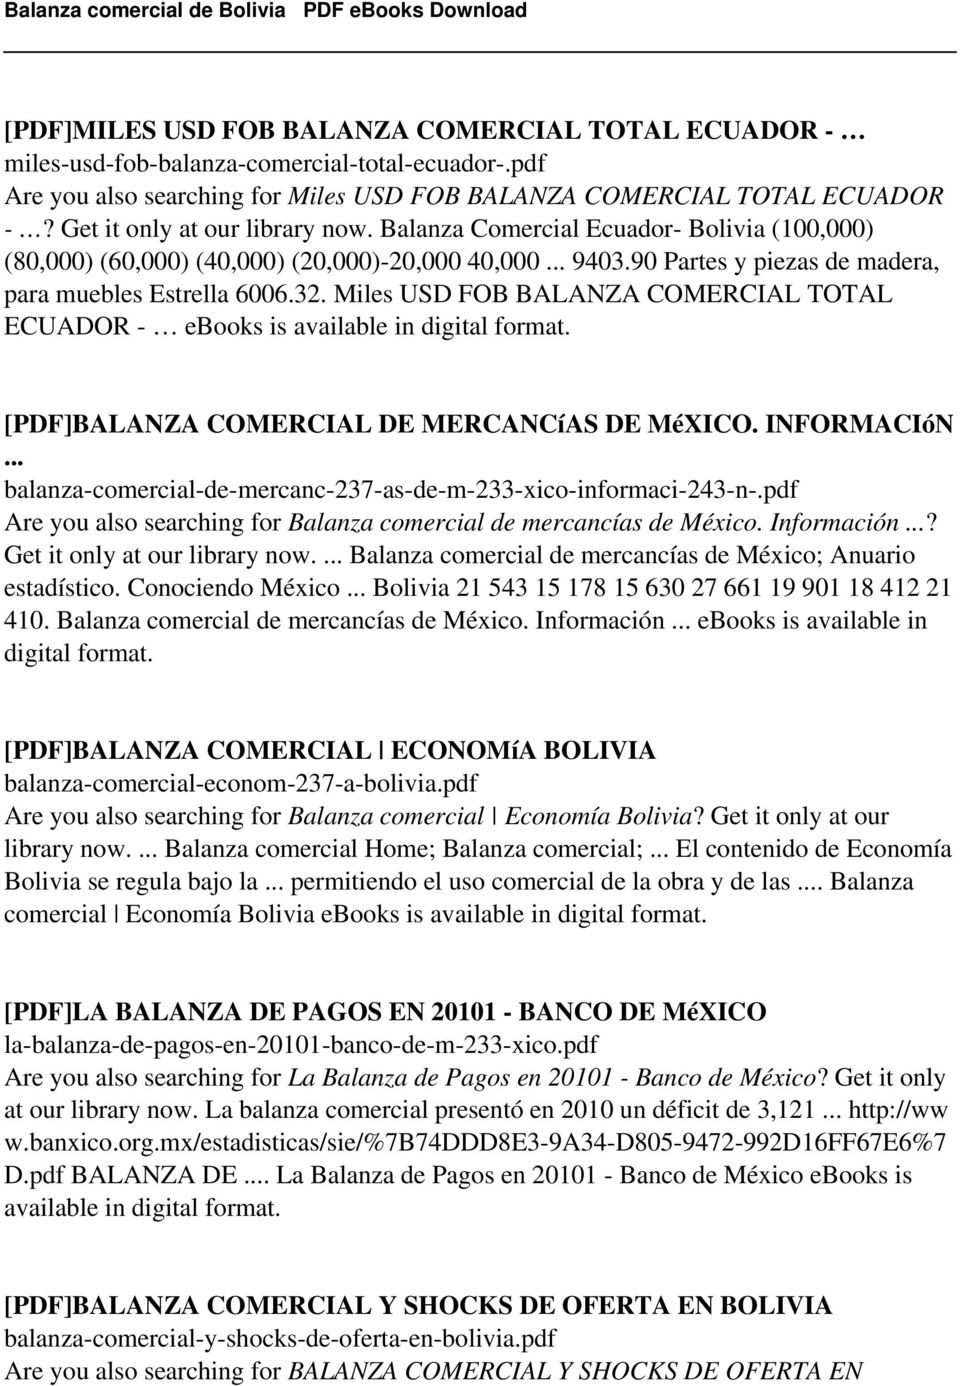 Miles USD FOB BALANZA COMERCIAL TOTAL ECUADOR - ebooks is [PDF]BALANZA COMERCIAL DE MERCANCíAS DE MéXICO. INFORMACIóN... balanza-comercial-de-mercanc-237-as-de-m-233-xico-informaci-243-n-.